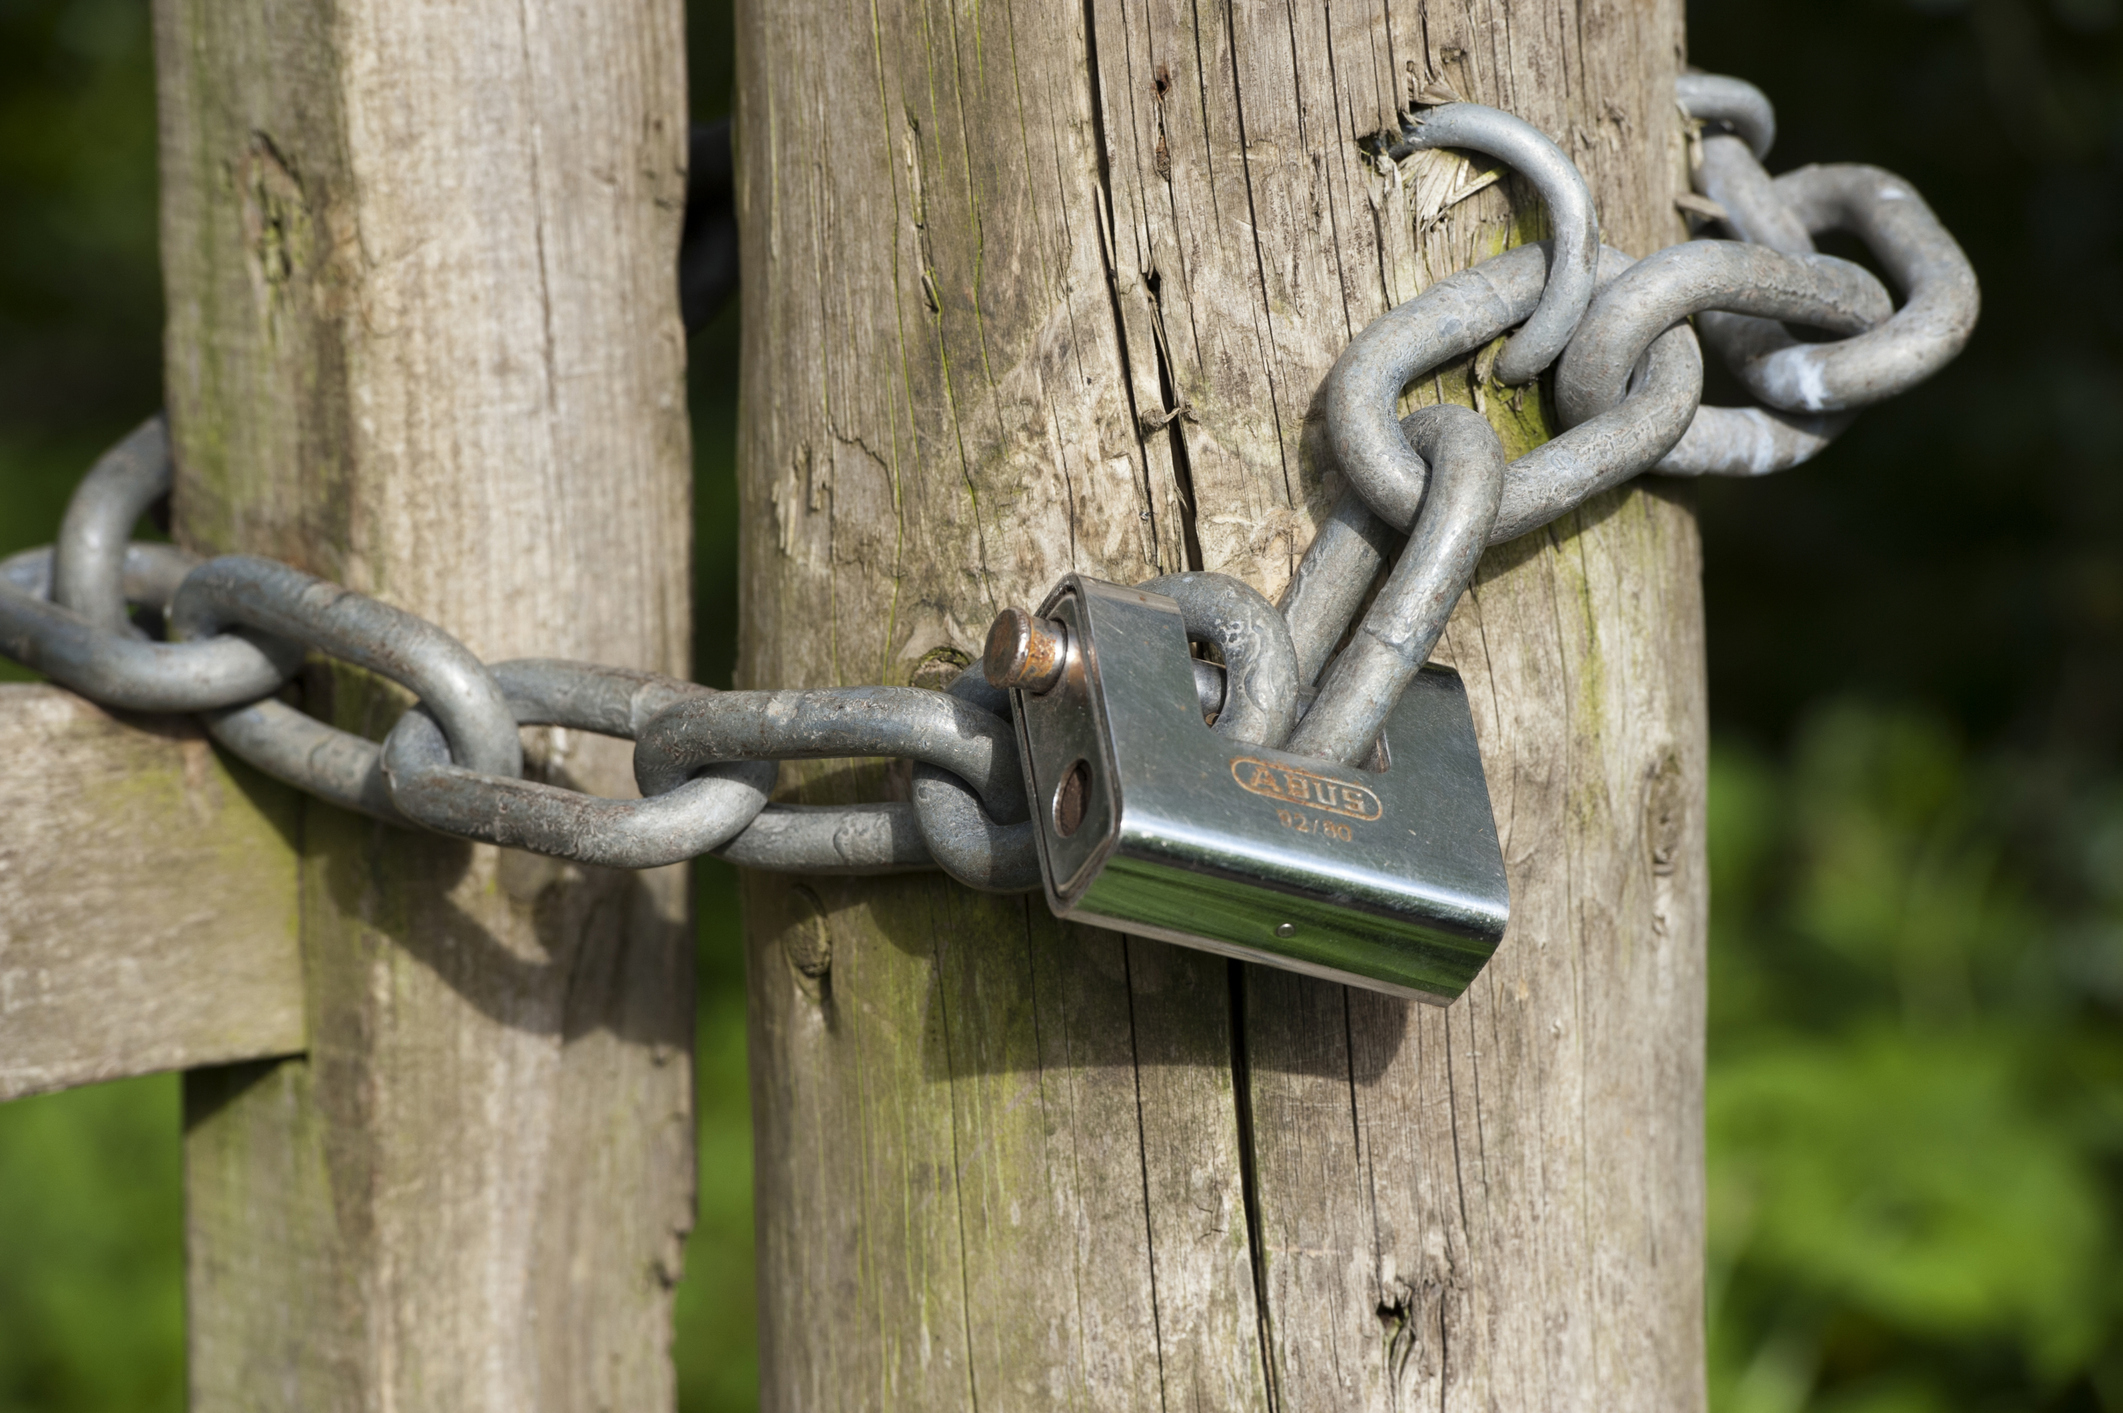 Chain locked around fence